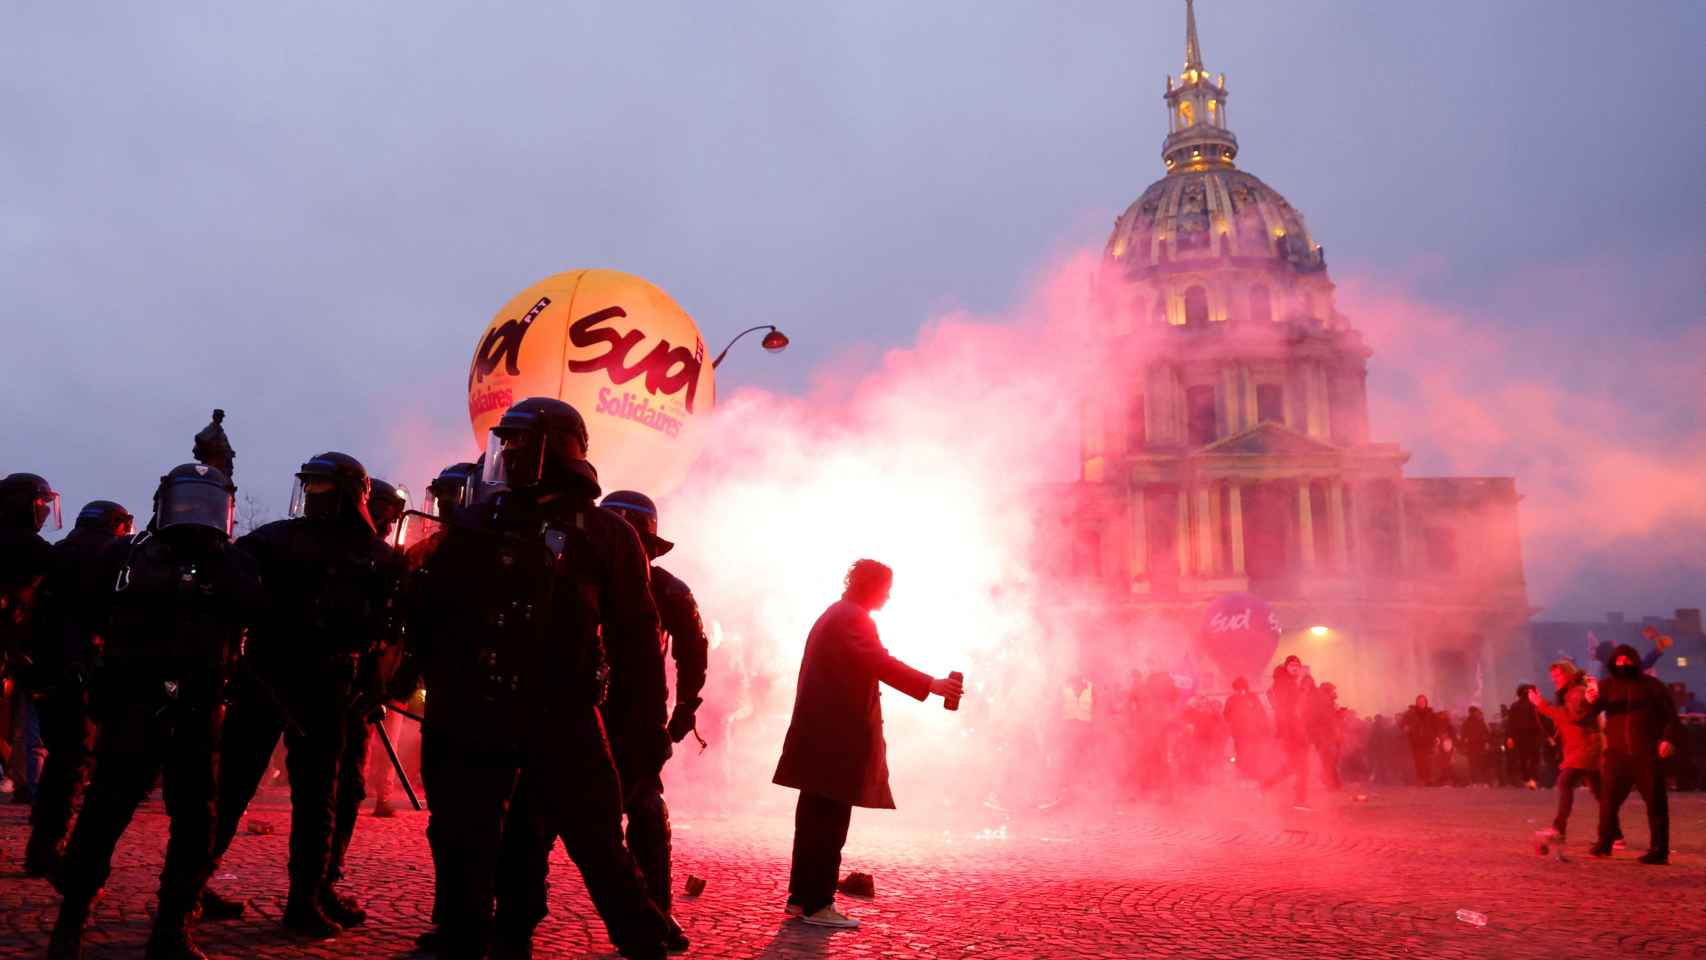 Imagen de la jornada de protestas en París contra la reforma de las pensiones de Macron.